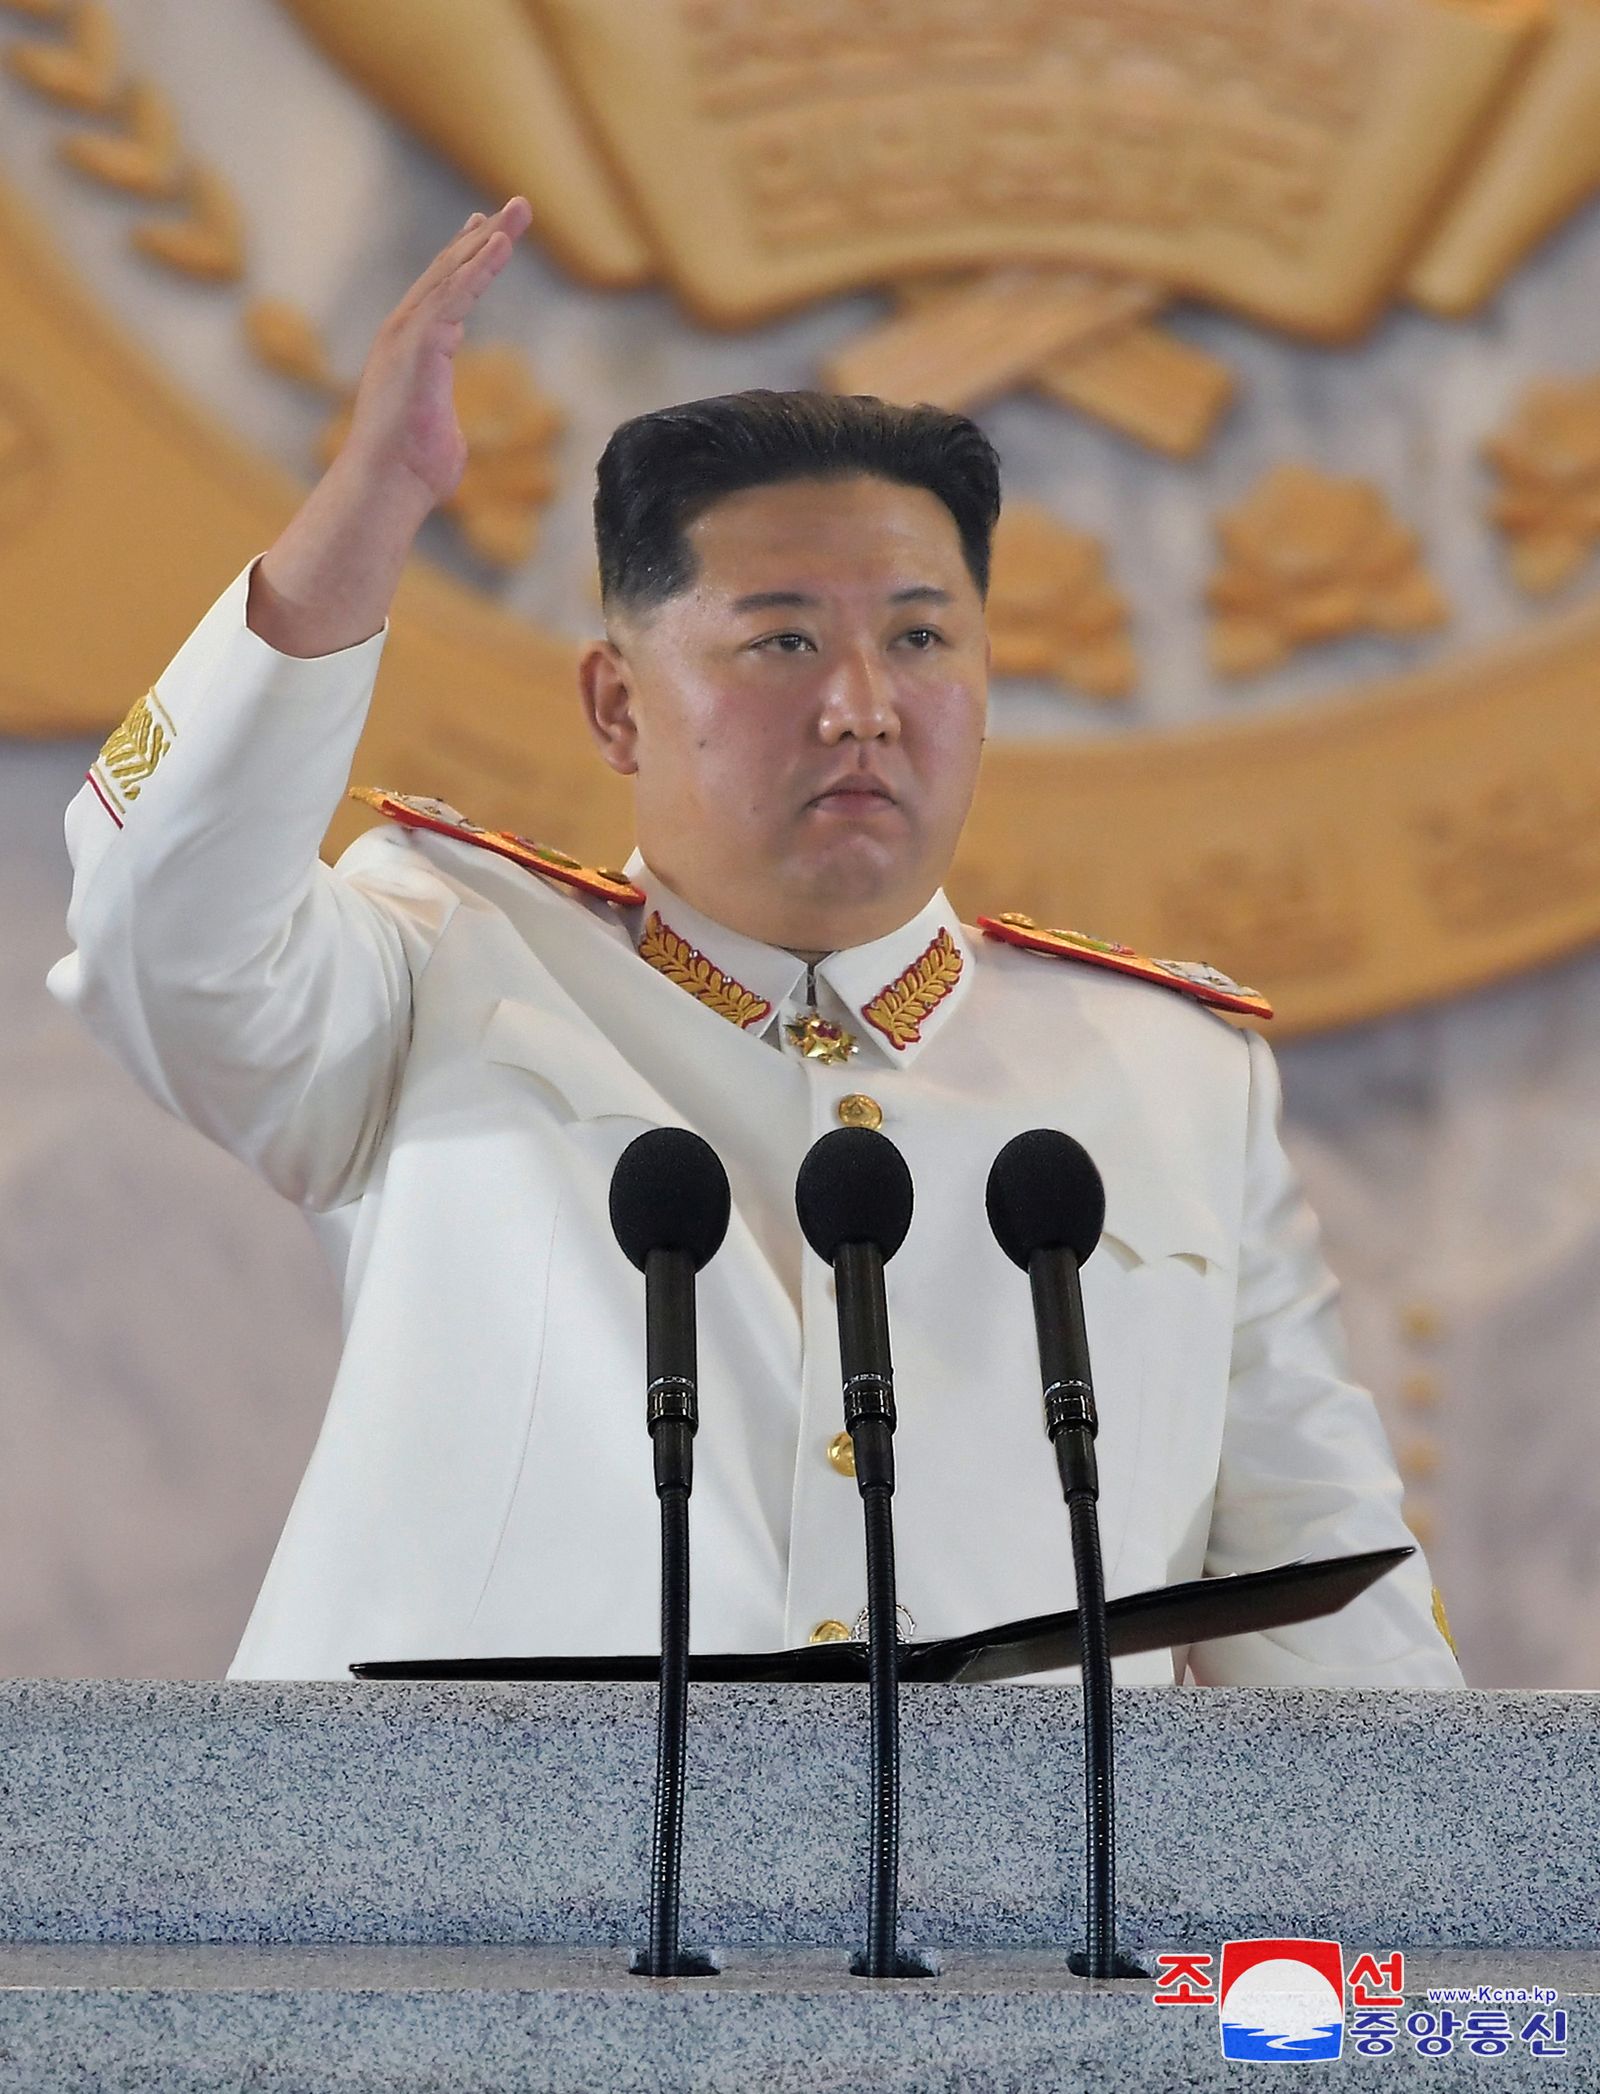 الزعيم الكوري الشمالي كيم جونج أون خلال عرض عسكري ليلي في بيونج يانج بذكرى تأسيس الجيش الكوري الشمالي - 26 أبريل 2022 - REUTERS